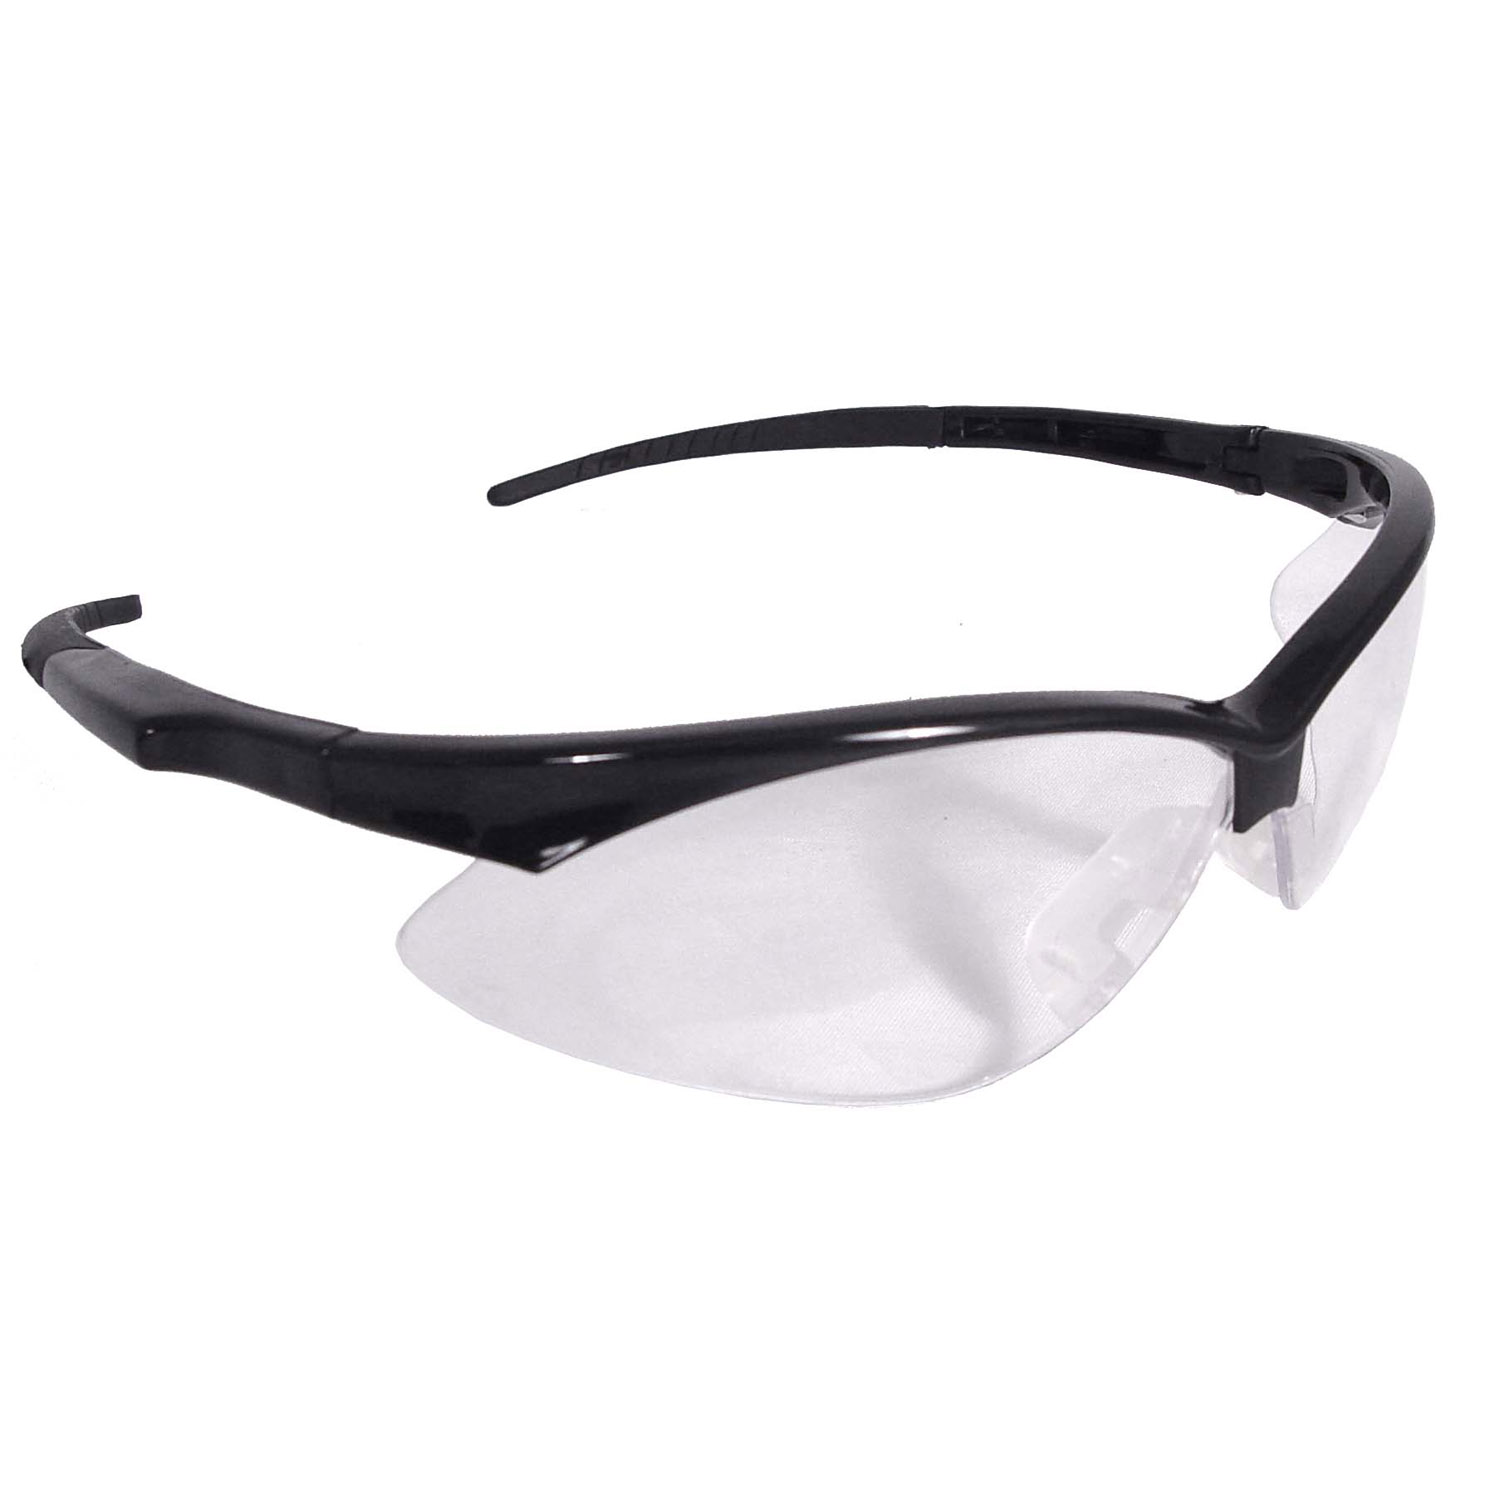 Rad-Apocalypse™ Safety Eyewear - Black Frame - Clear Anti-Fog Lens